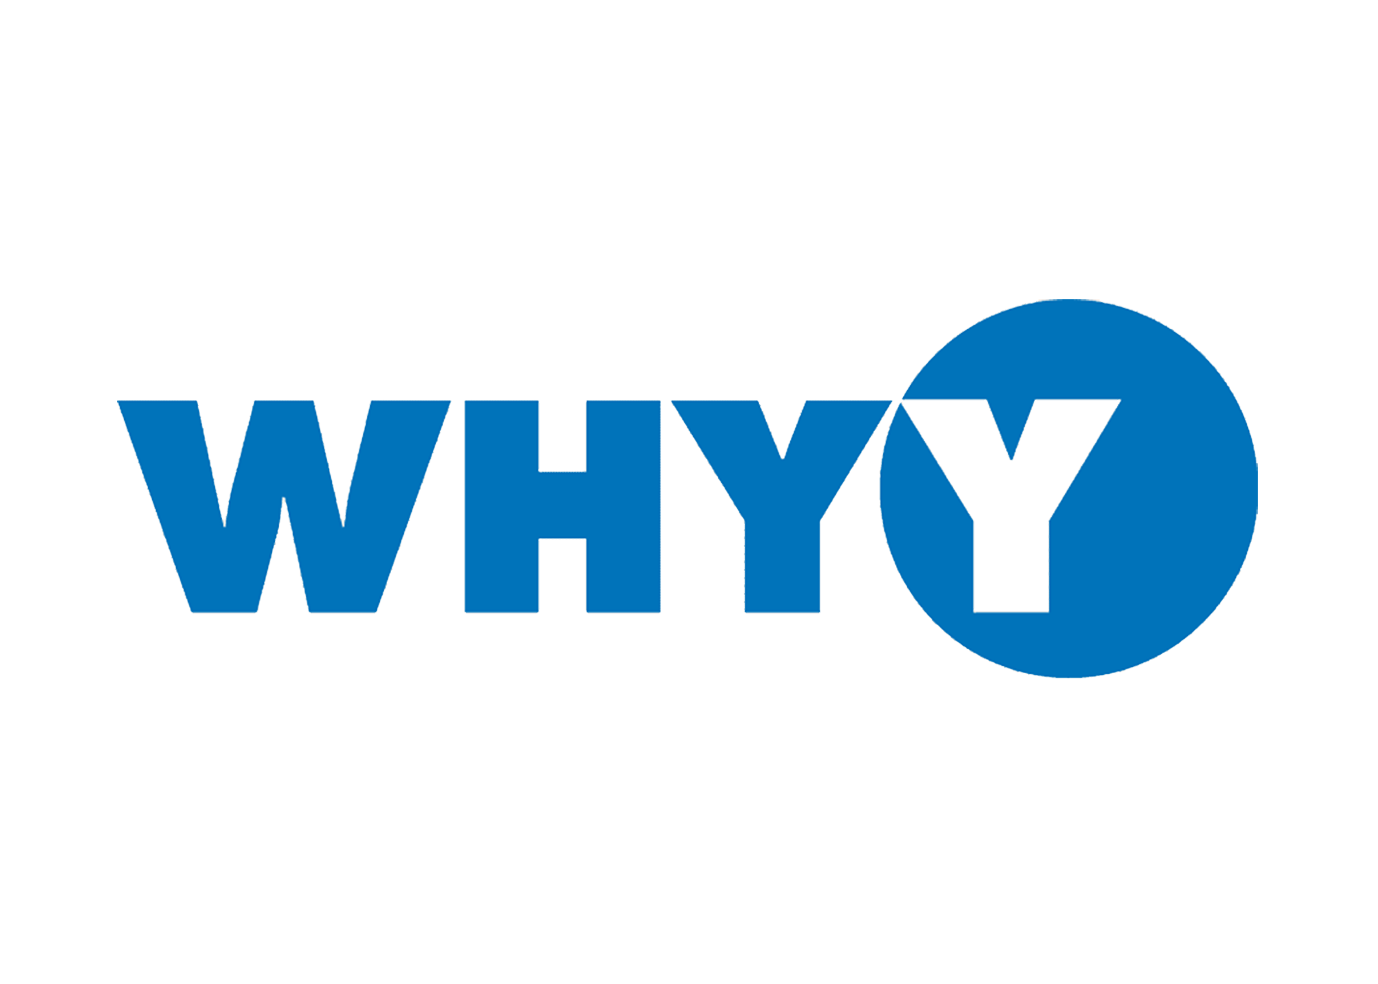 whyy logo